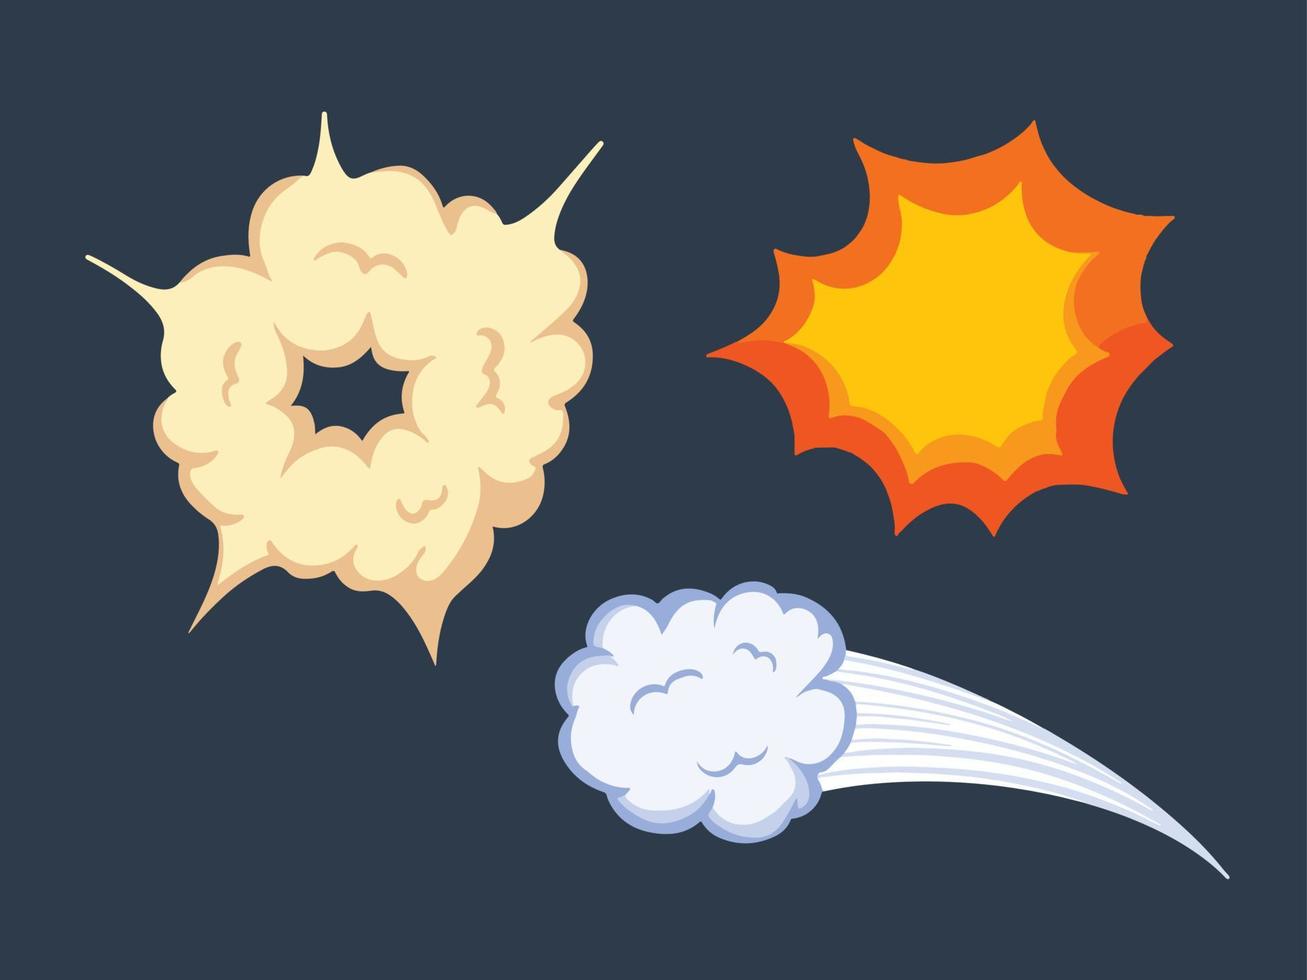 nuages, boum et ensemble de décoration effet dessin animé whoosh. illustration vectorielle de dessin d'élément d'explosion avec un style d'art plat de dessin animé et des couleurs vibrantes vecteur